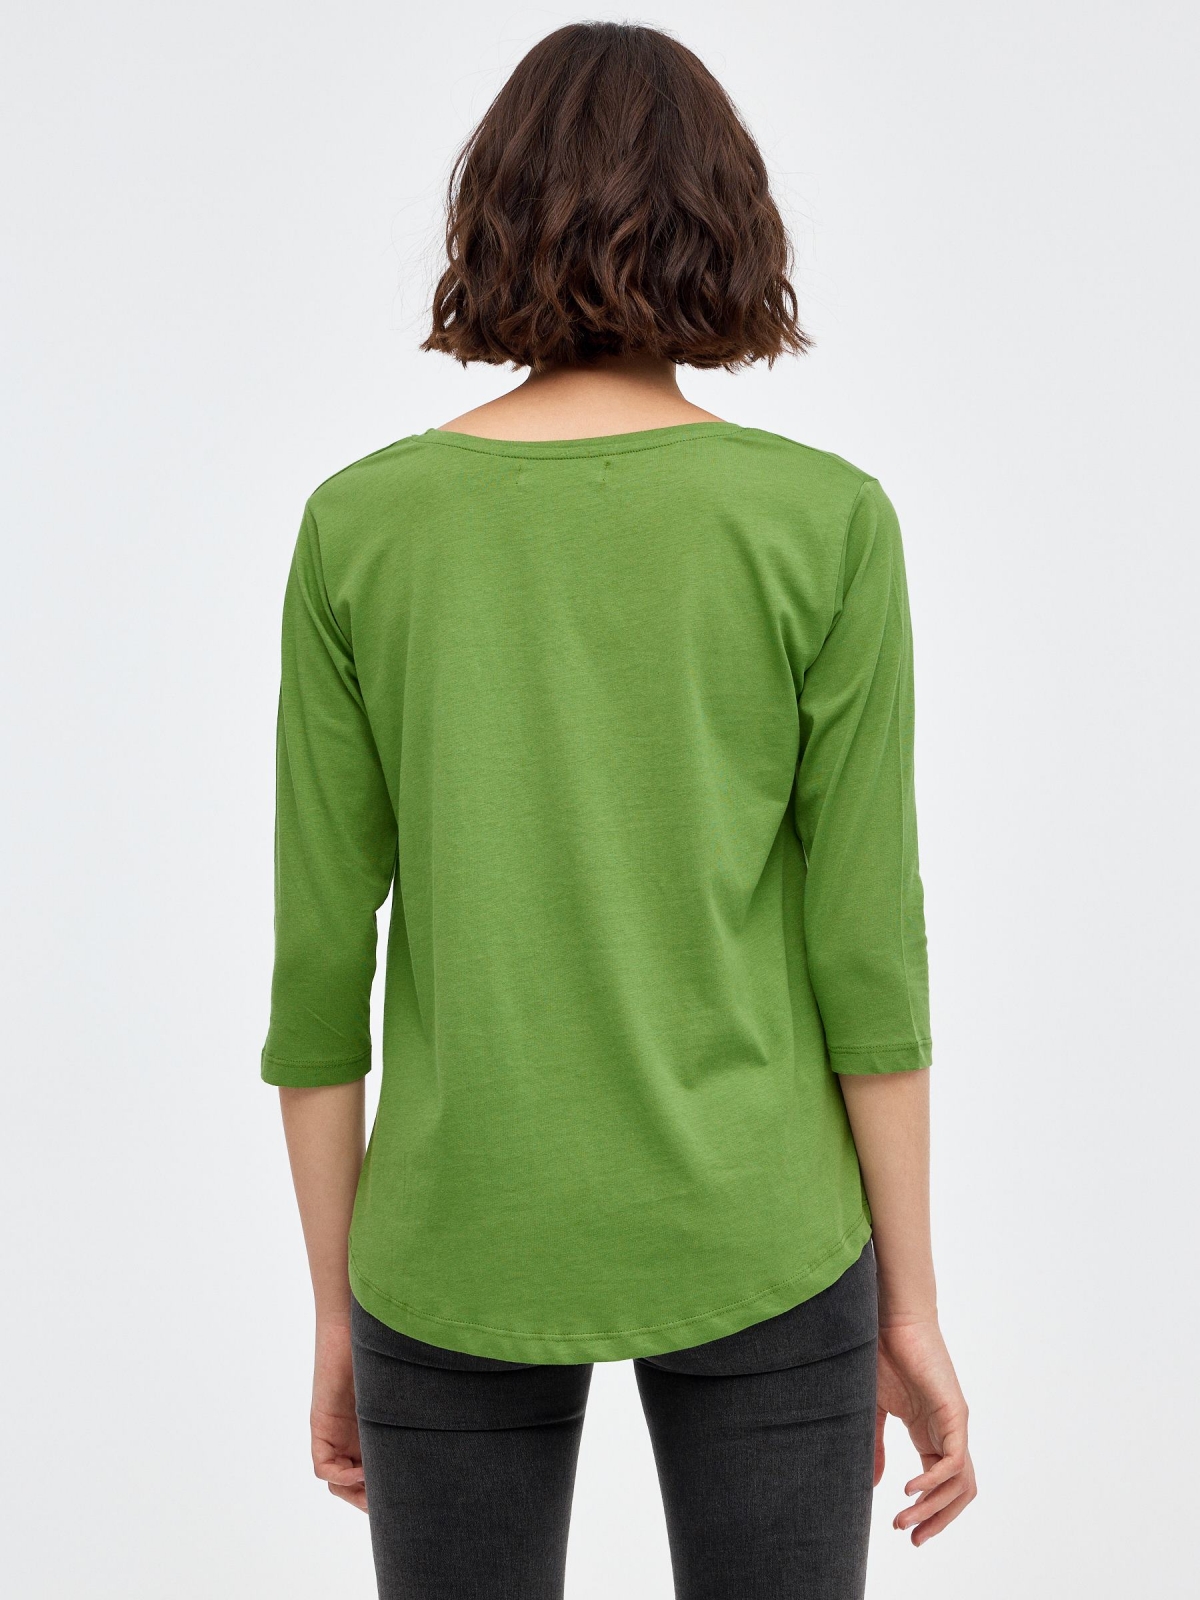 Camiseta Environmental verde oliva vista media trasera